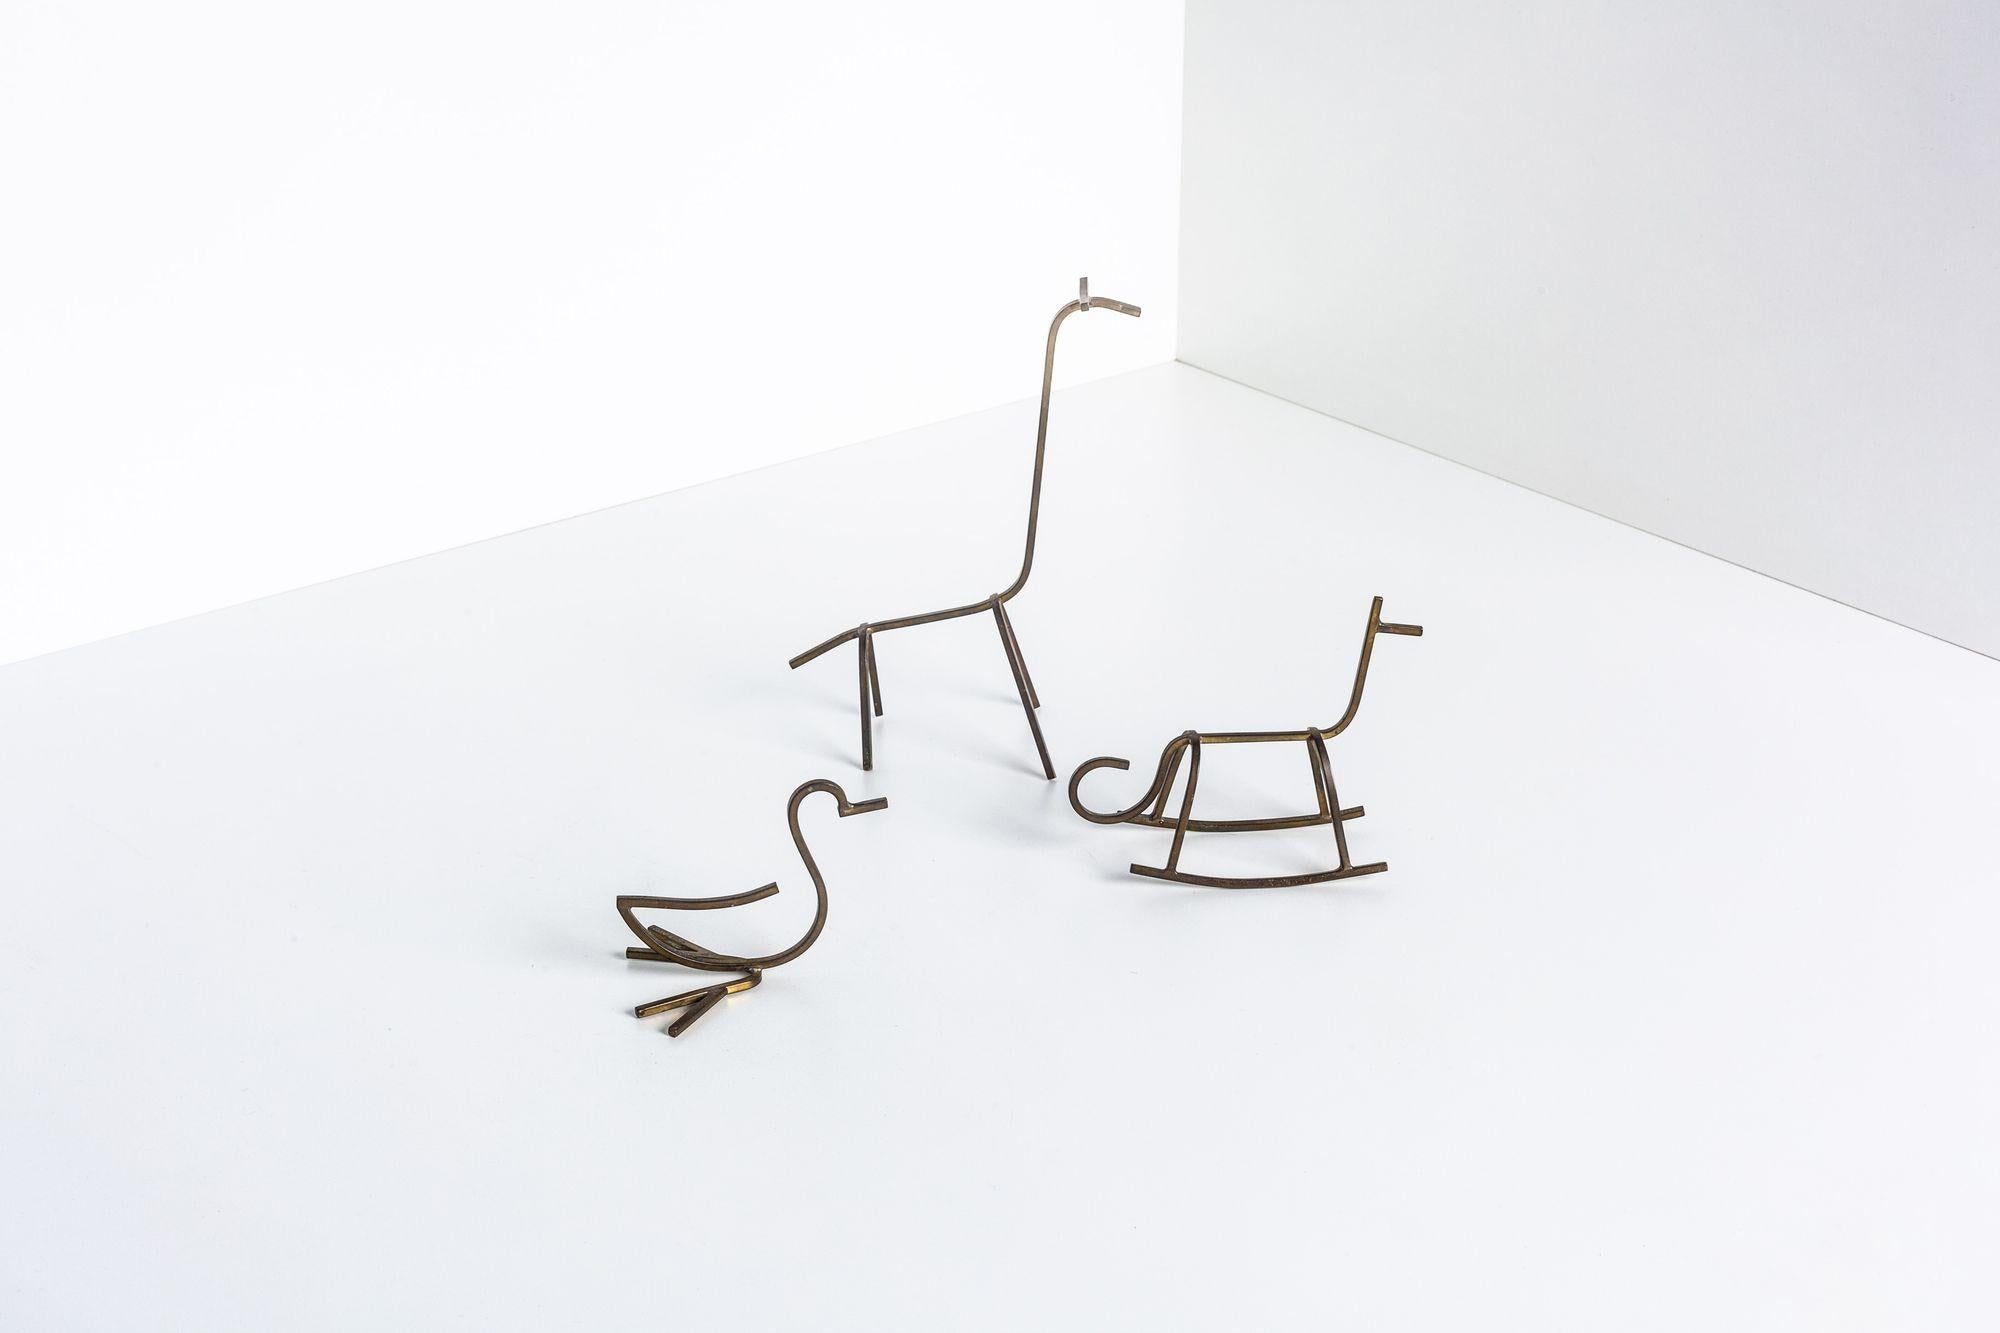 Simon Kops set of Solid Brass Minimalist Animal Sculptures ;
Girafe, canard et cheval faits à la main
Signé en dessous de chaque exemplaire, Simon Kops
Girafe 7.50